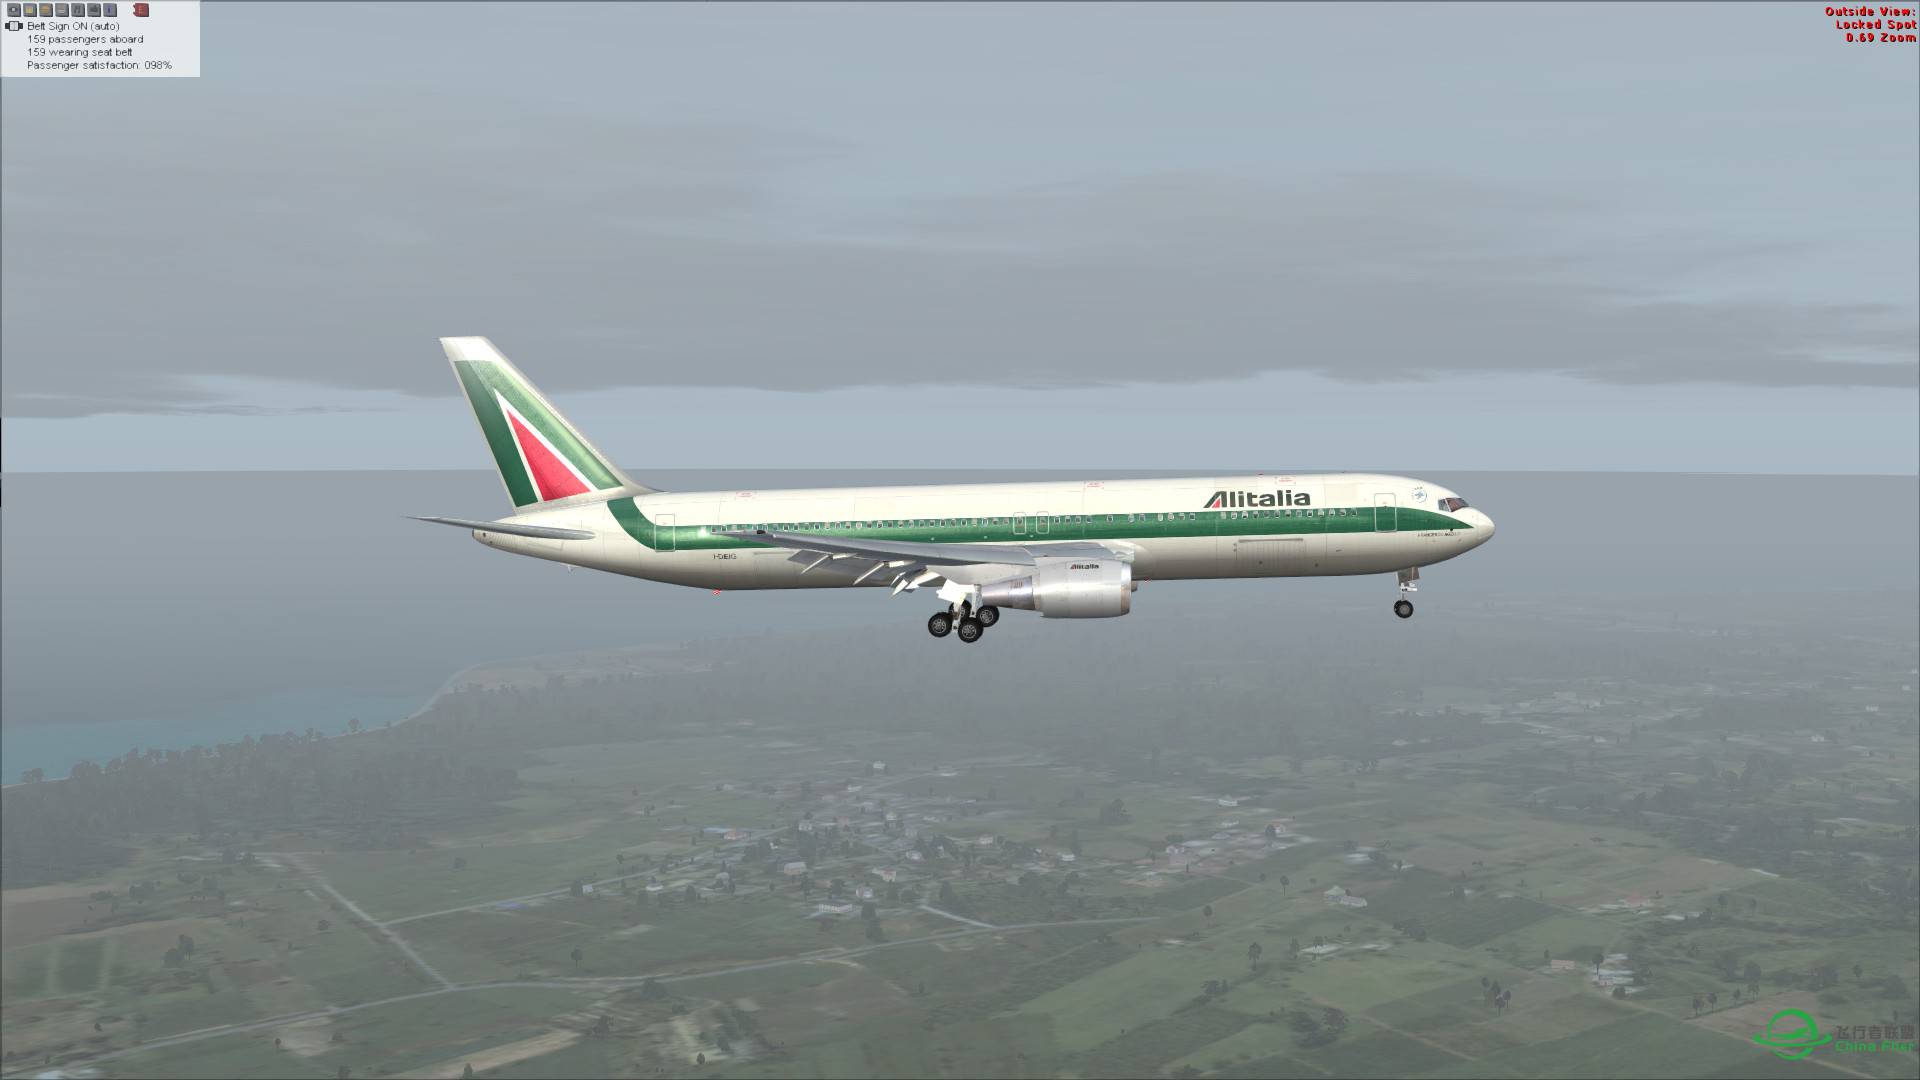 意大利航空 767-300ER 罗马-吉隆坡-6119 